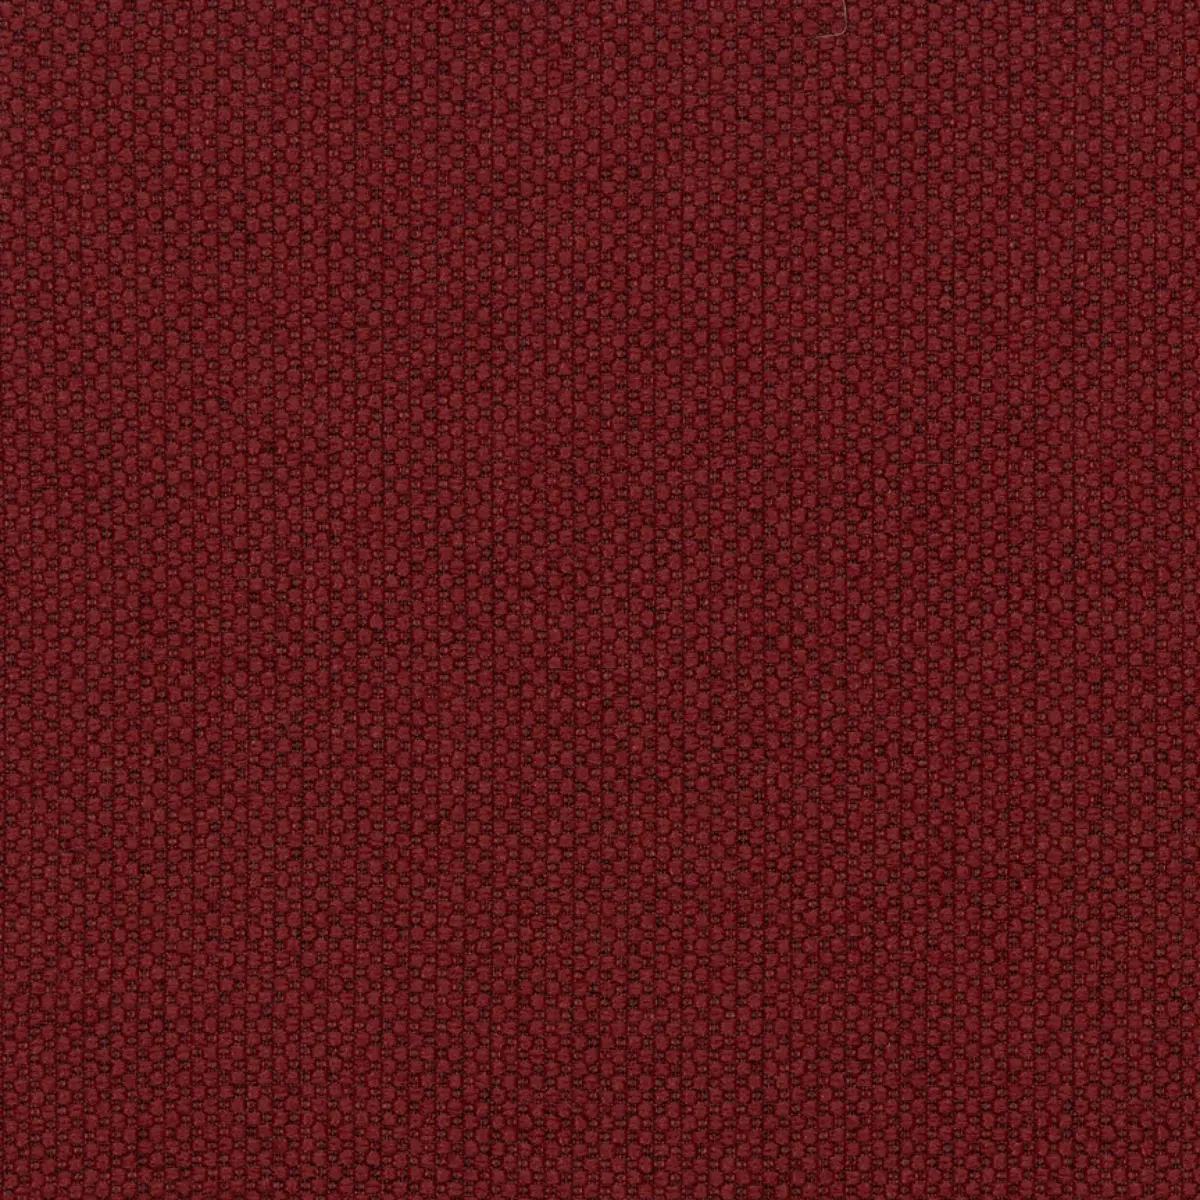 Fabric sample Merit 0039 red